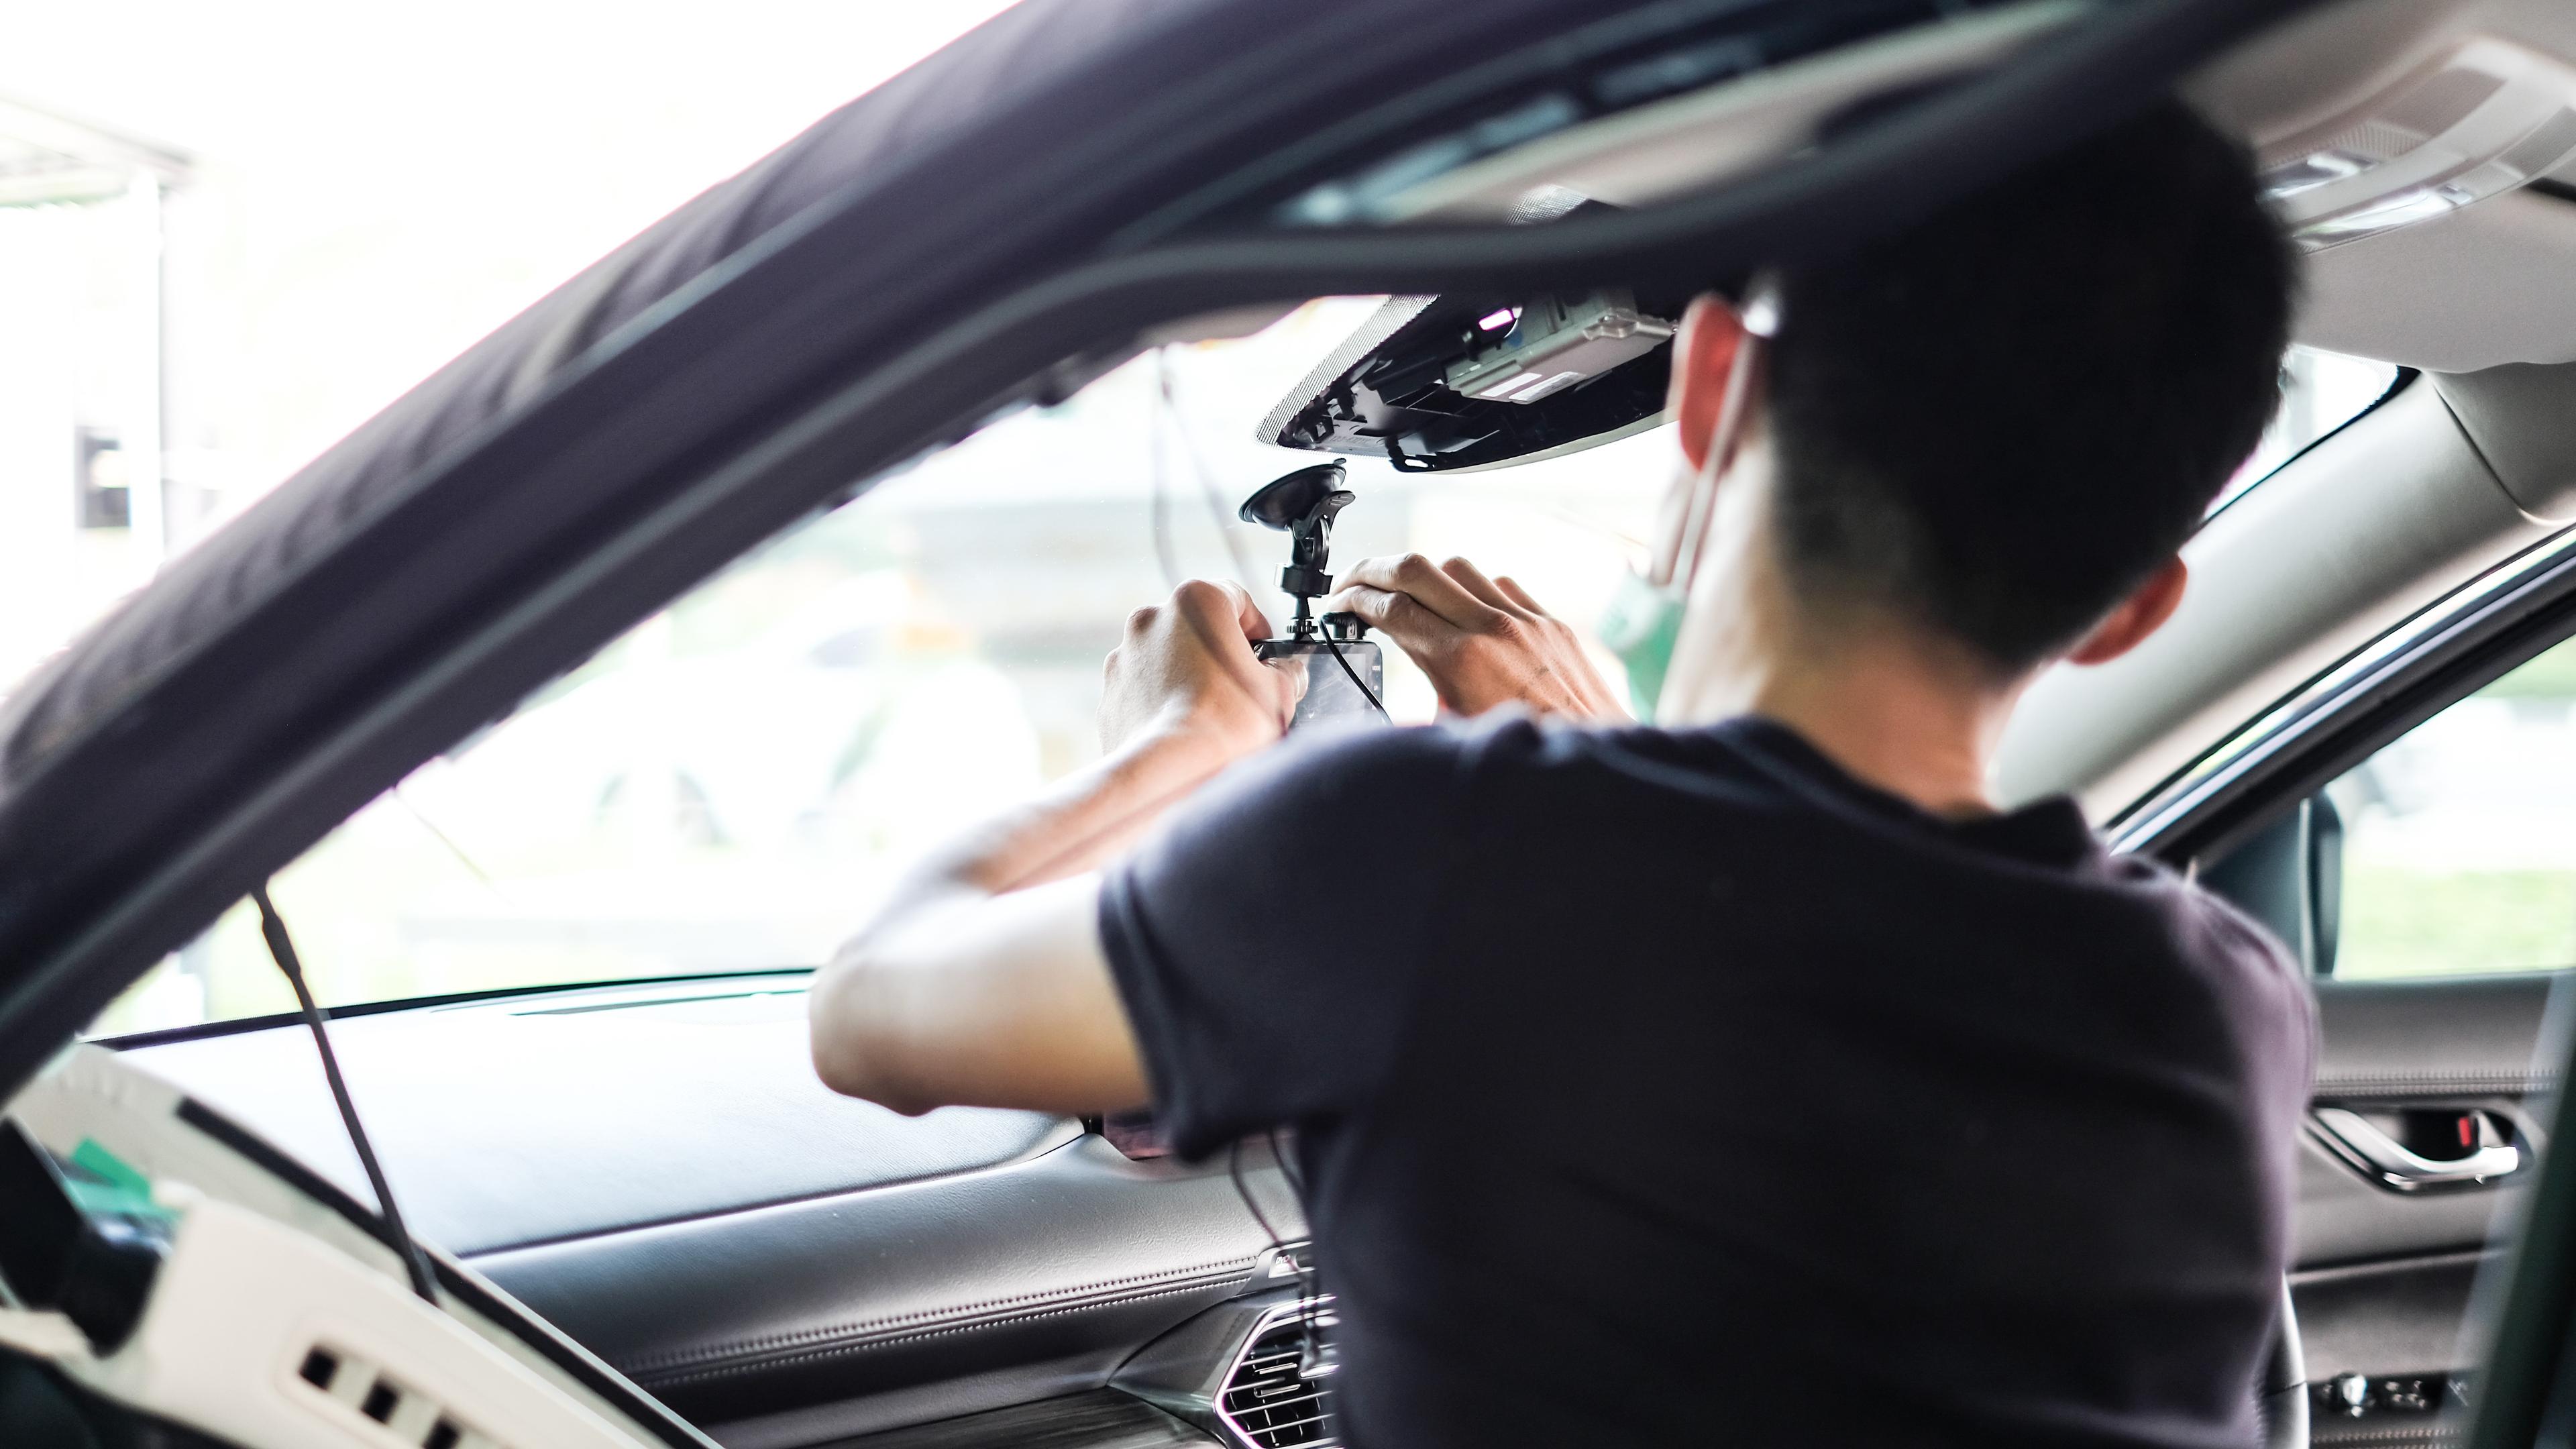 Det finns många kameror i bilarna, och om inte de räcker kan bilföraren beställa fler kameror som tillval. Foto: Kpakook/Shutterstock